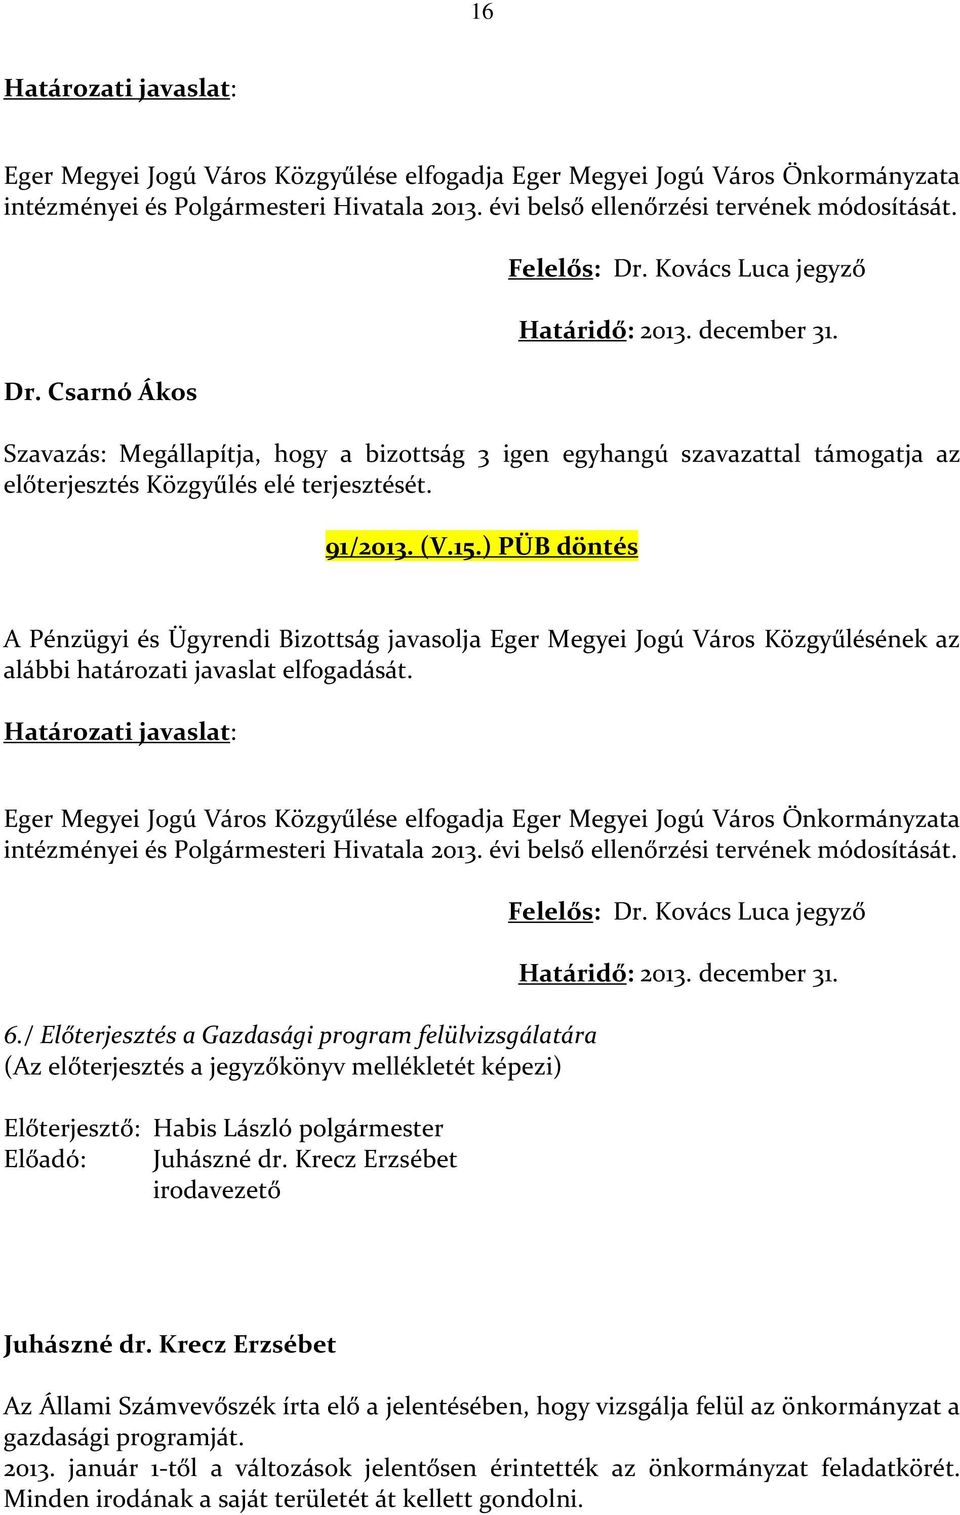 91/2013. (V.15.) PÜB döntés A Pénzügyi és Ügyrendi Bizottság javasolja Eger Megyei Jogú Város Közgyűlésének az alábbi határozati javaslat elfogadását.